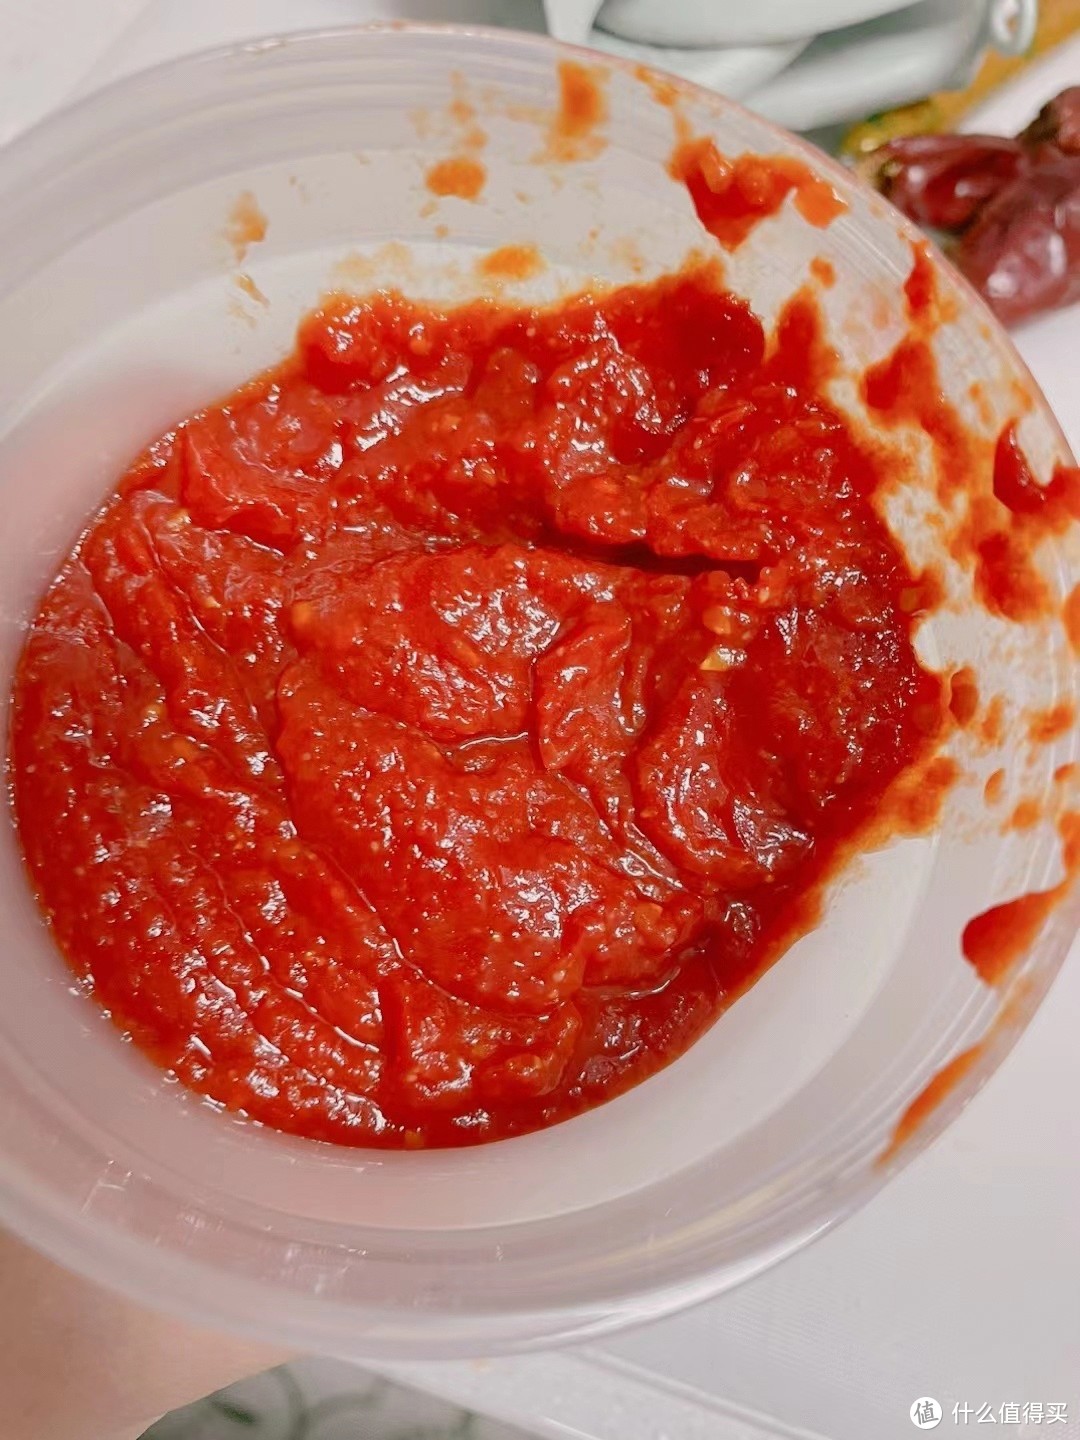 小朋友也能独立制作的美味健康番茄酱做法分享